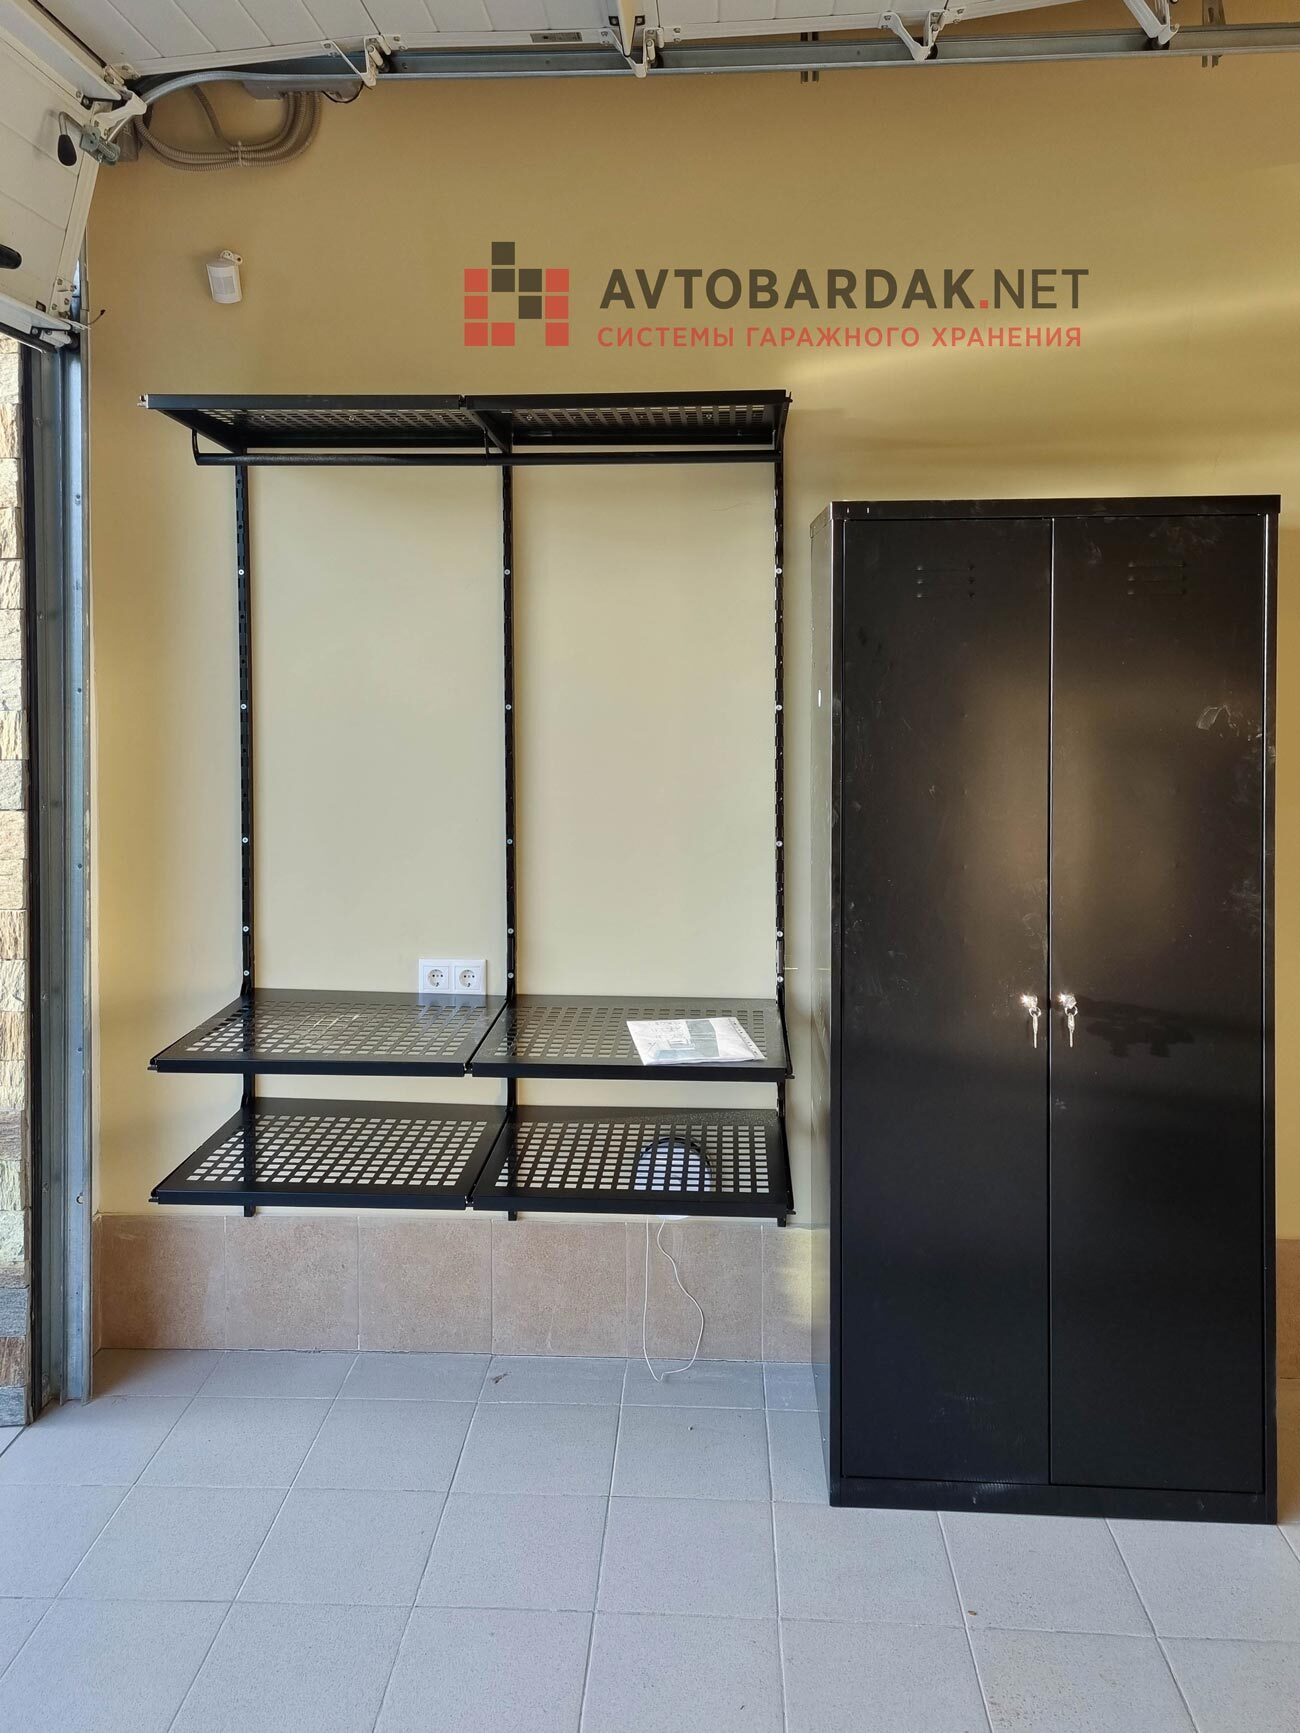 Проект №44: гараж 39 кв м (7,8 на 5) + покраска мебели в черный